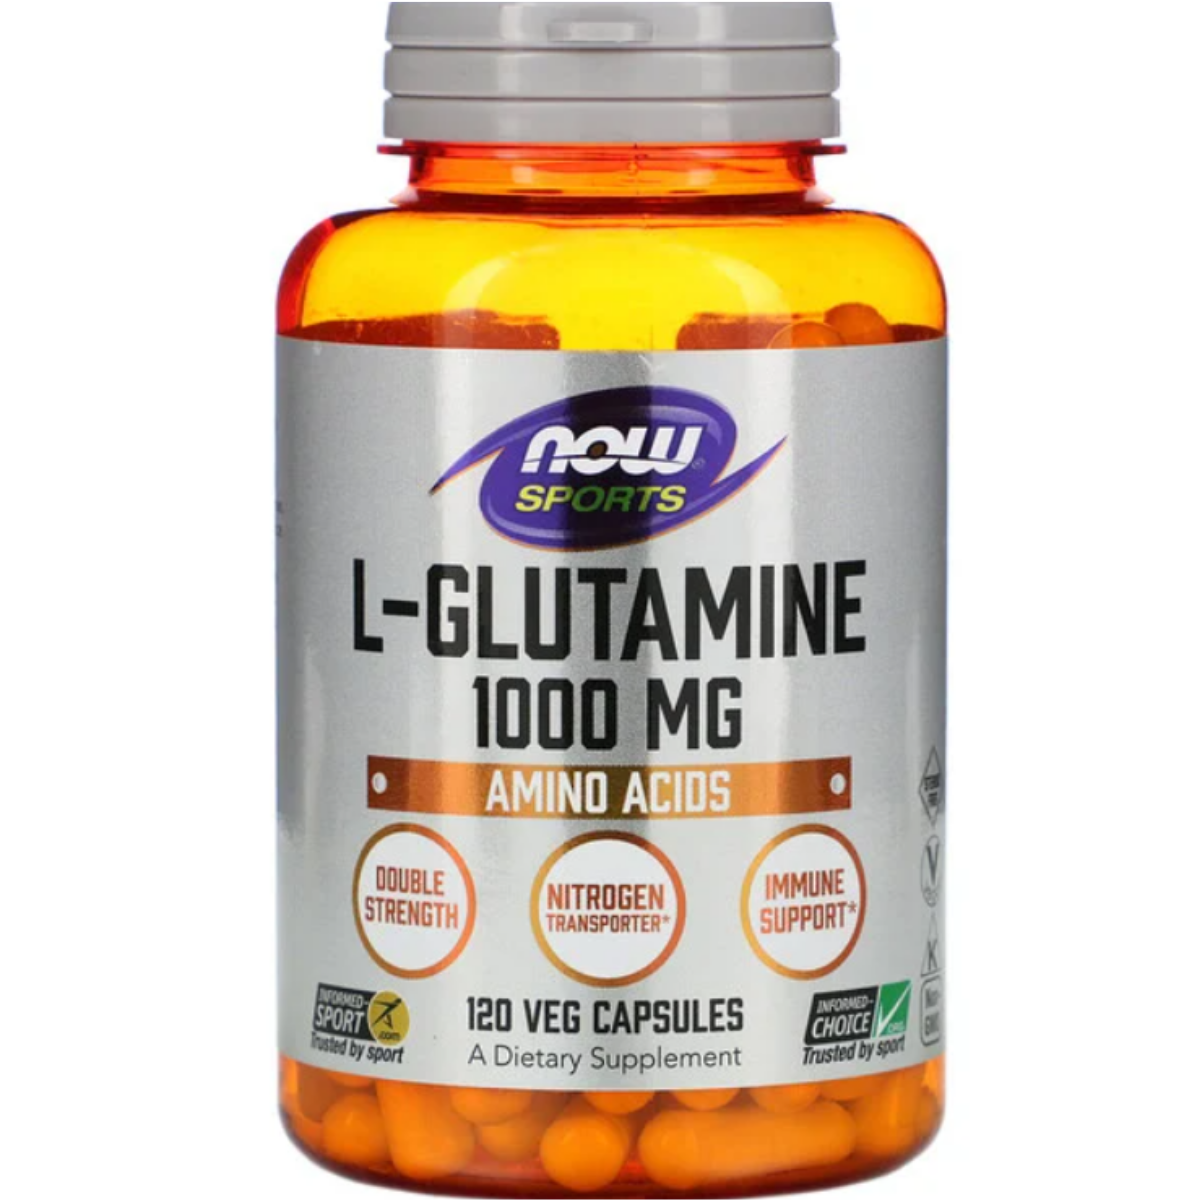 Primary image of L-Glutamine